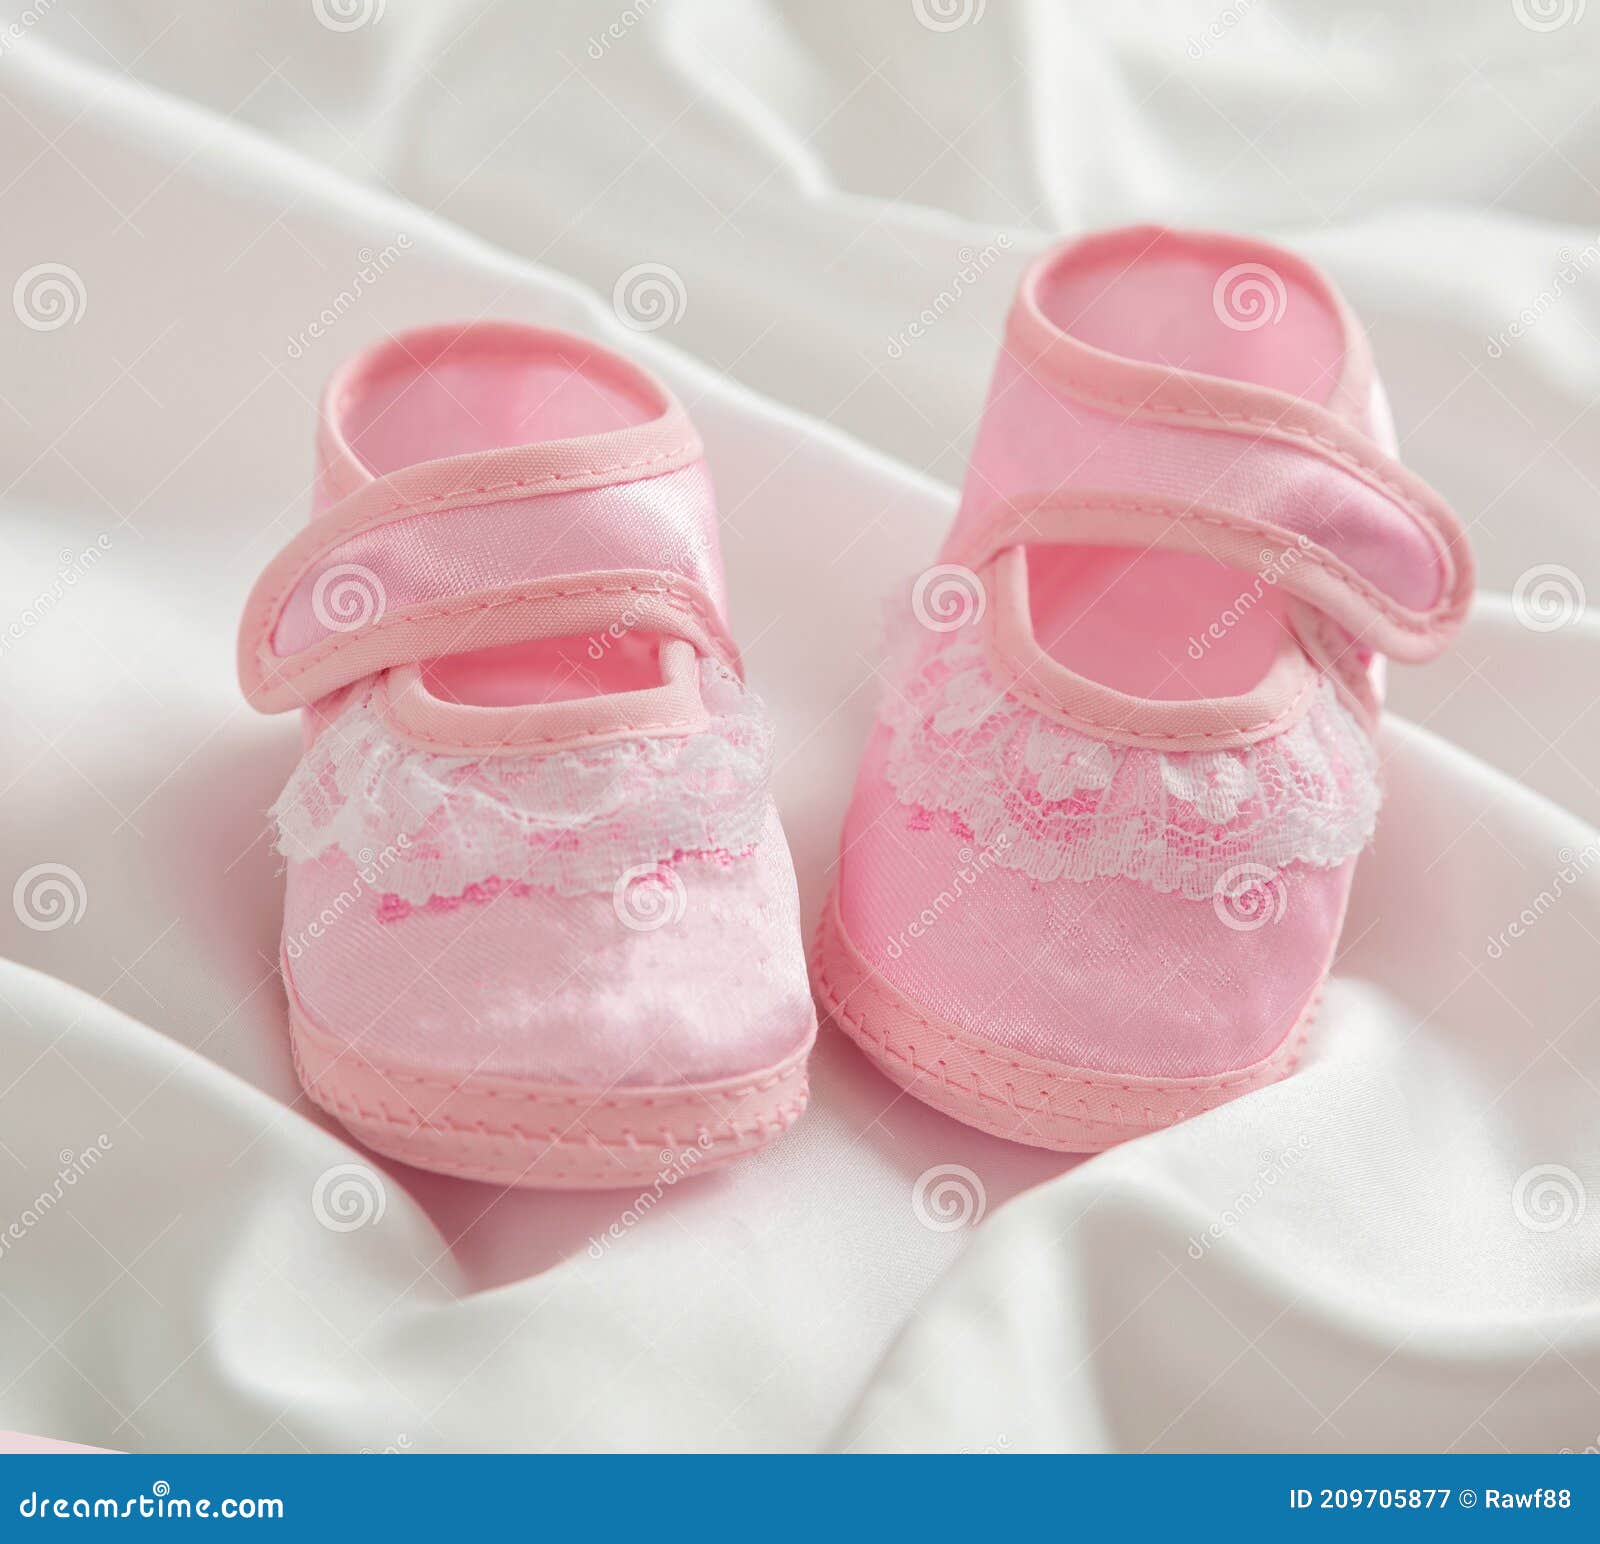 Zapatos De Bebé De Fondo Blanco De Satén Espacio De Copia Vertical Imagen de archivo - de bebé, cabrito: 209705877